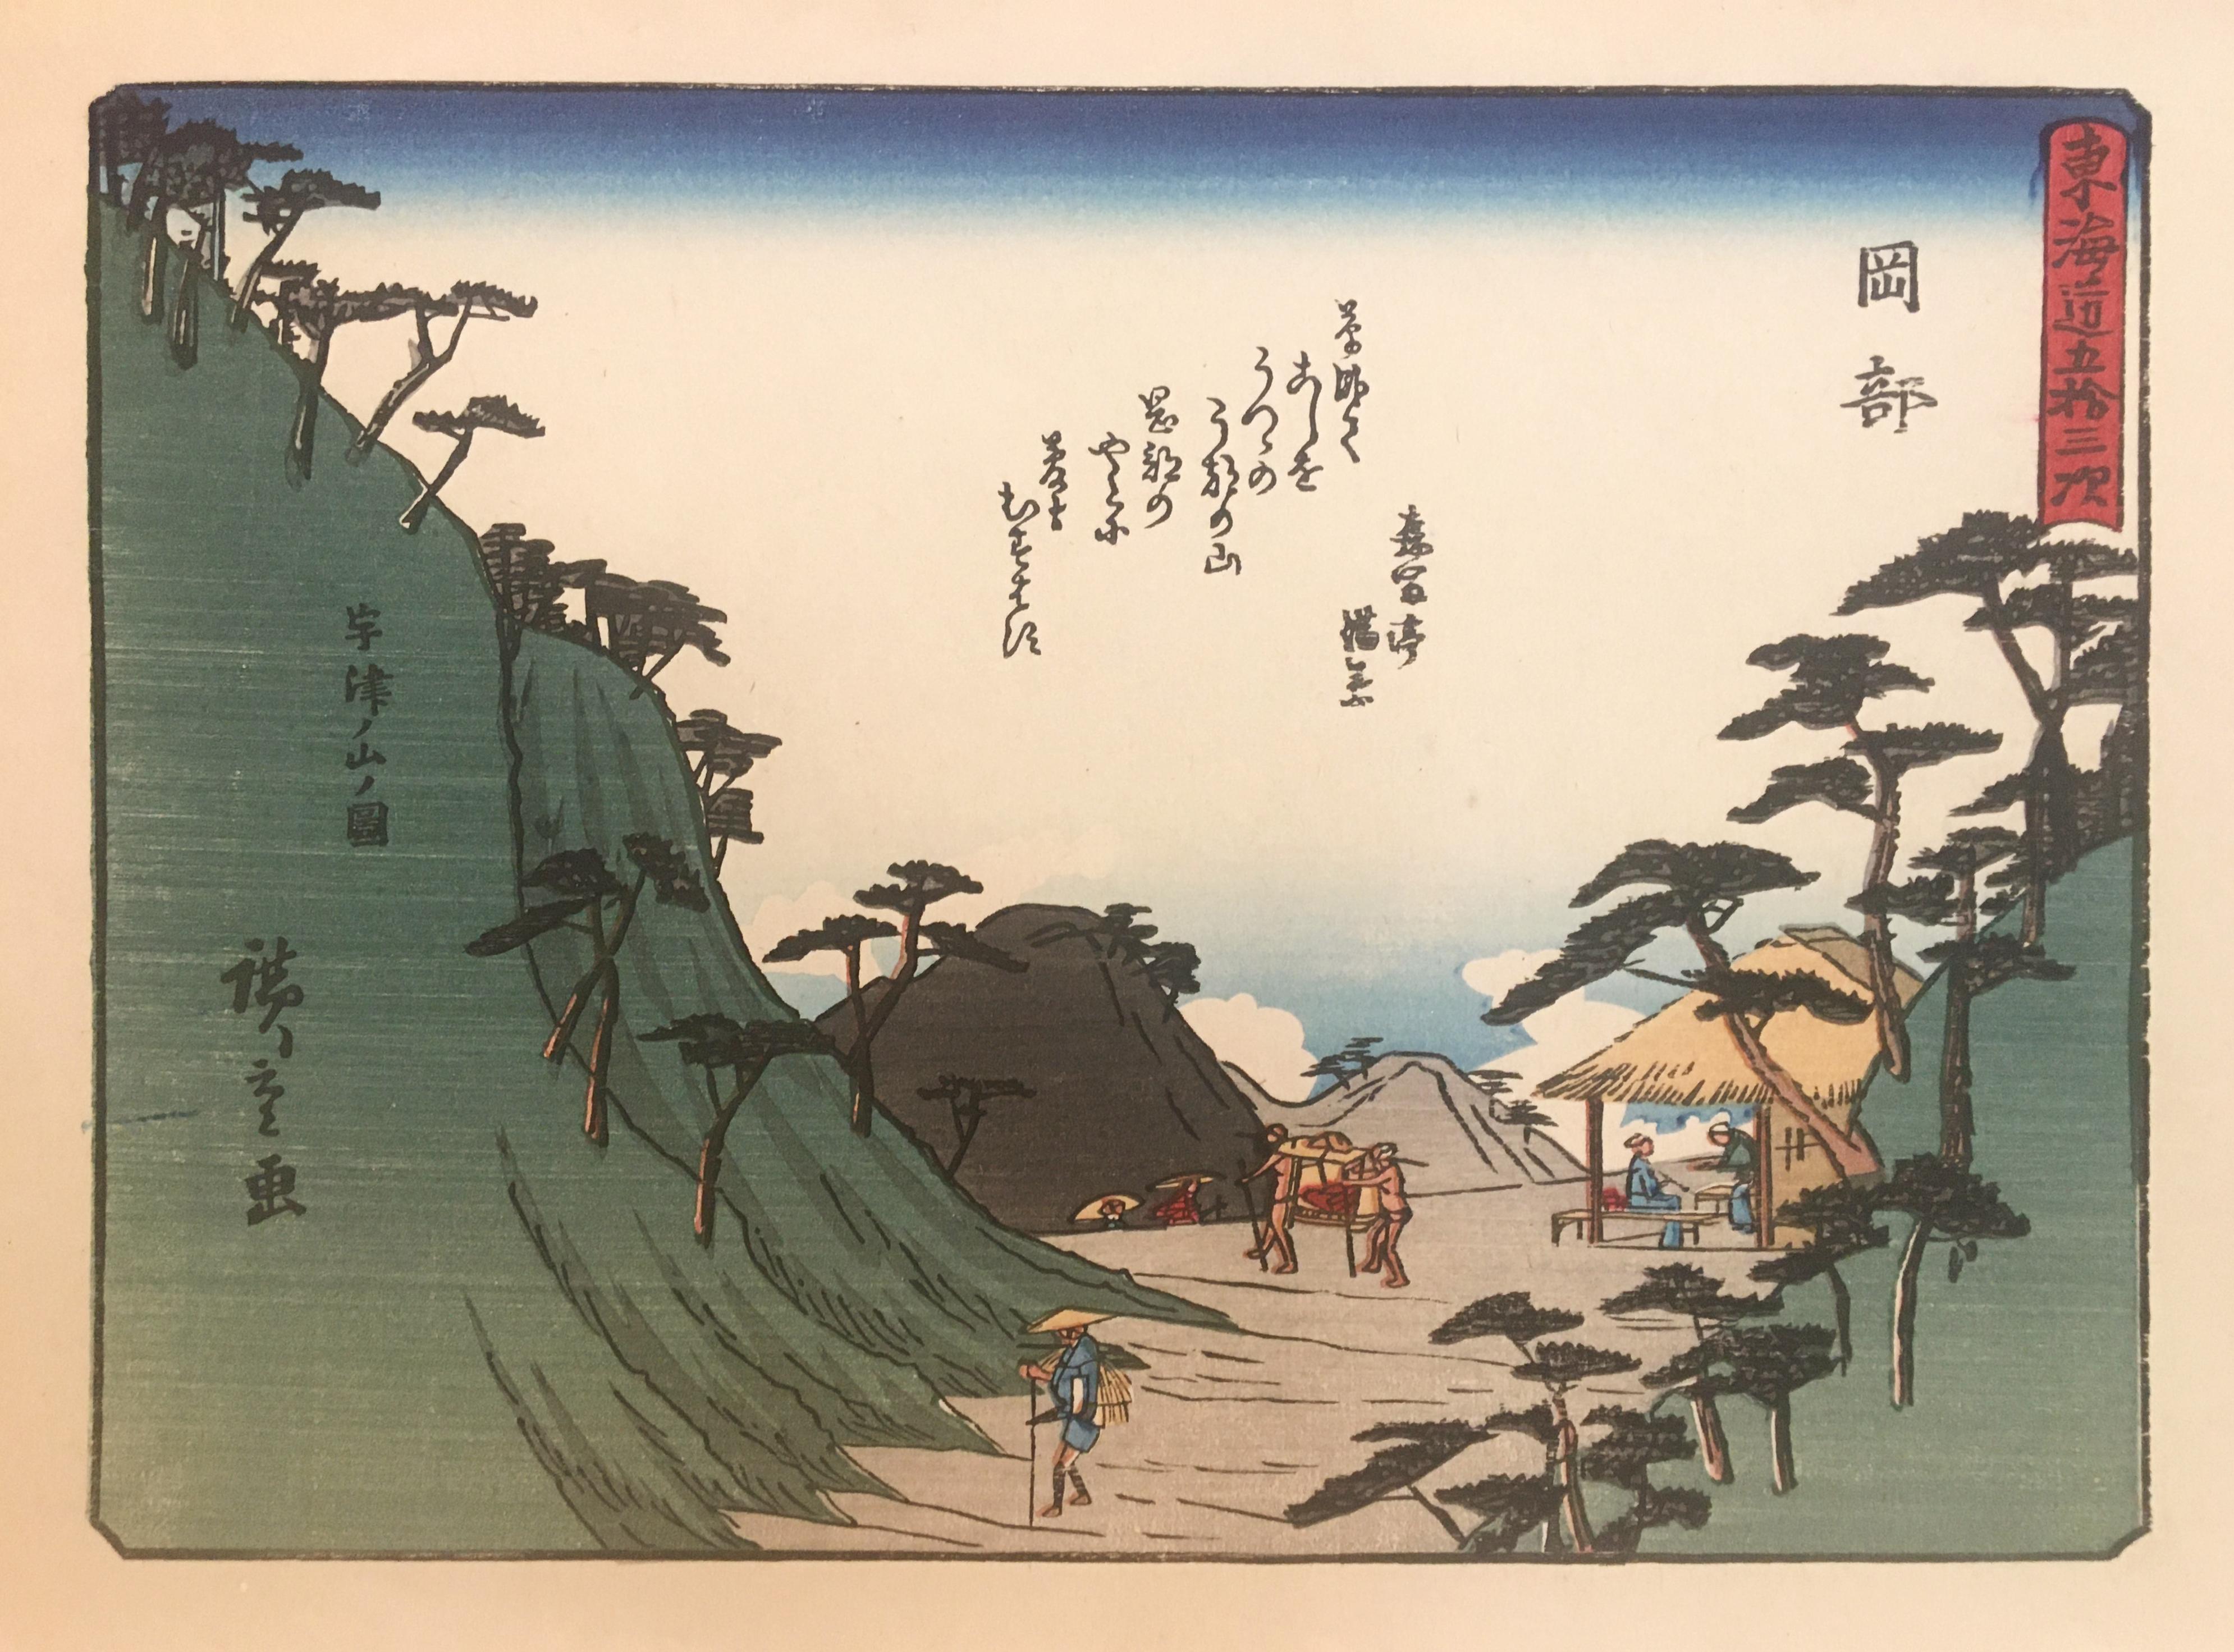 'Mountain Pass at Okabe', After Utagawa Hiroshige, Ukiyo-E Woodblock, Tokaido